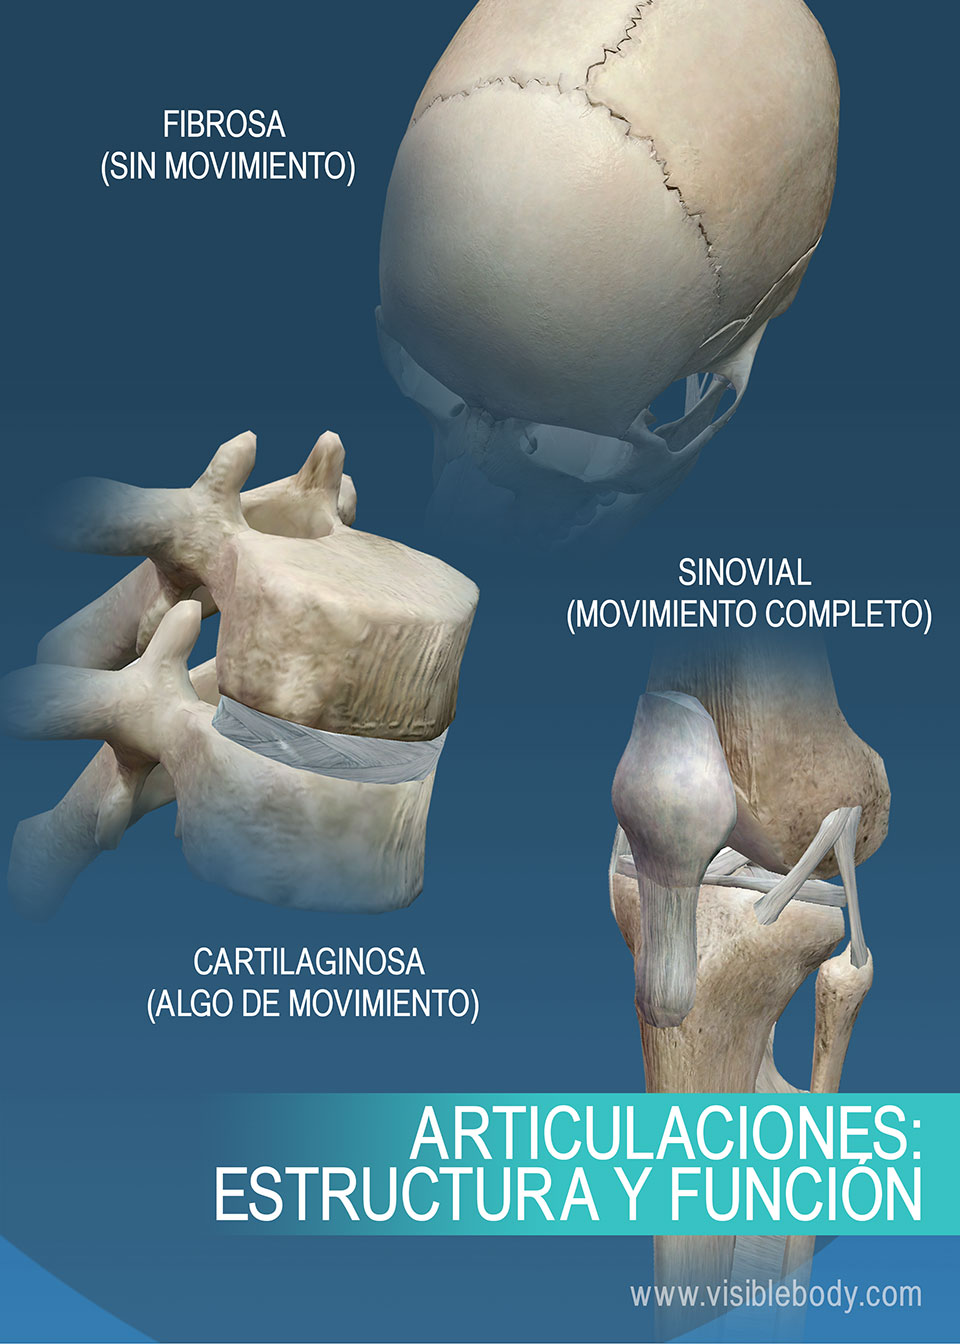 Resumen de diferentes articulaciones, suturas, rodilla, vertebrales